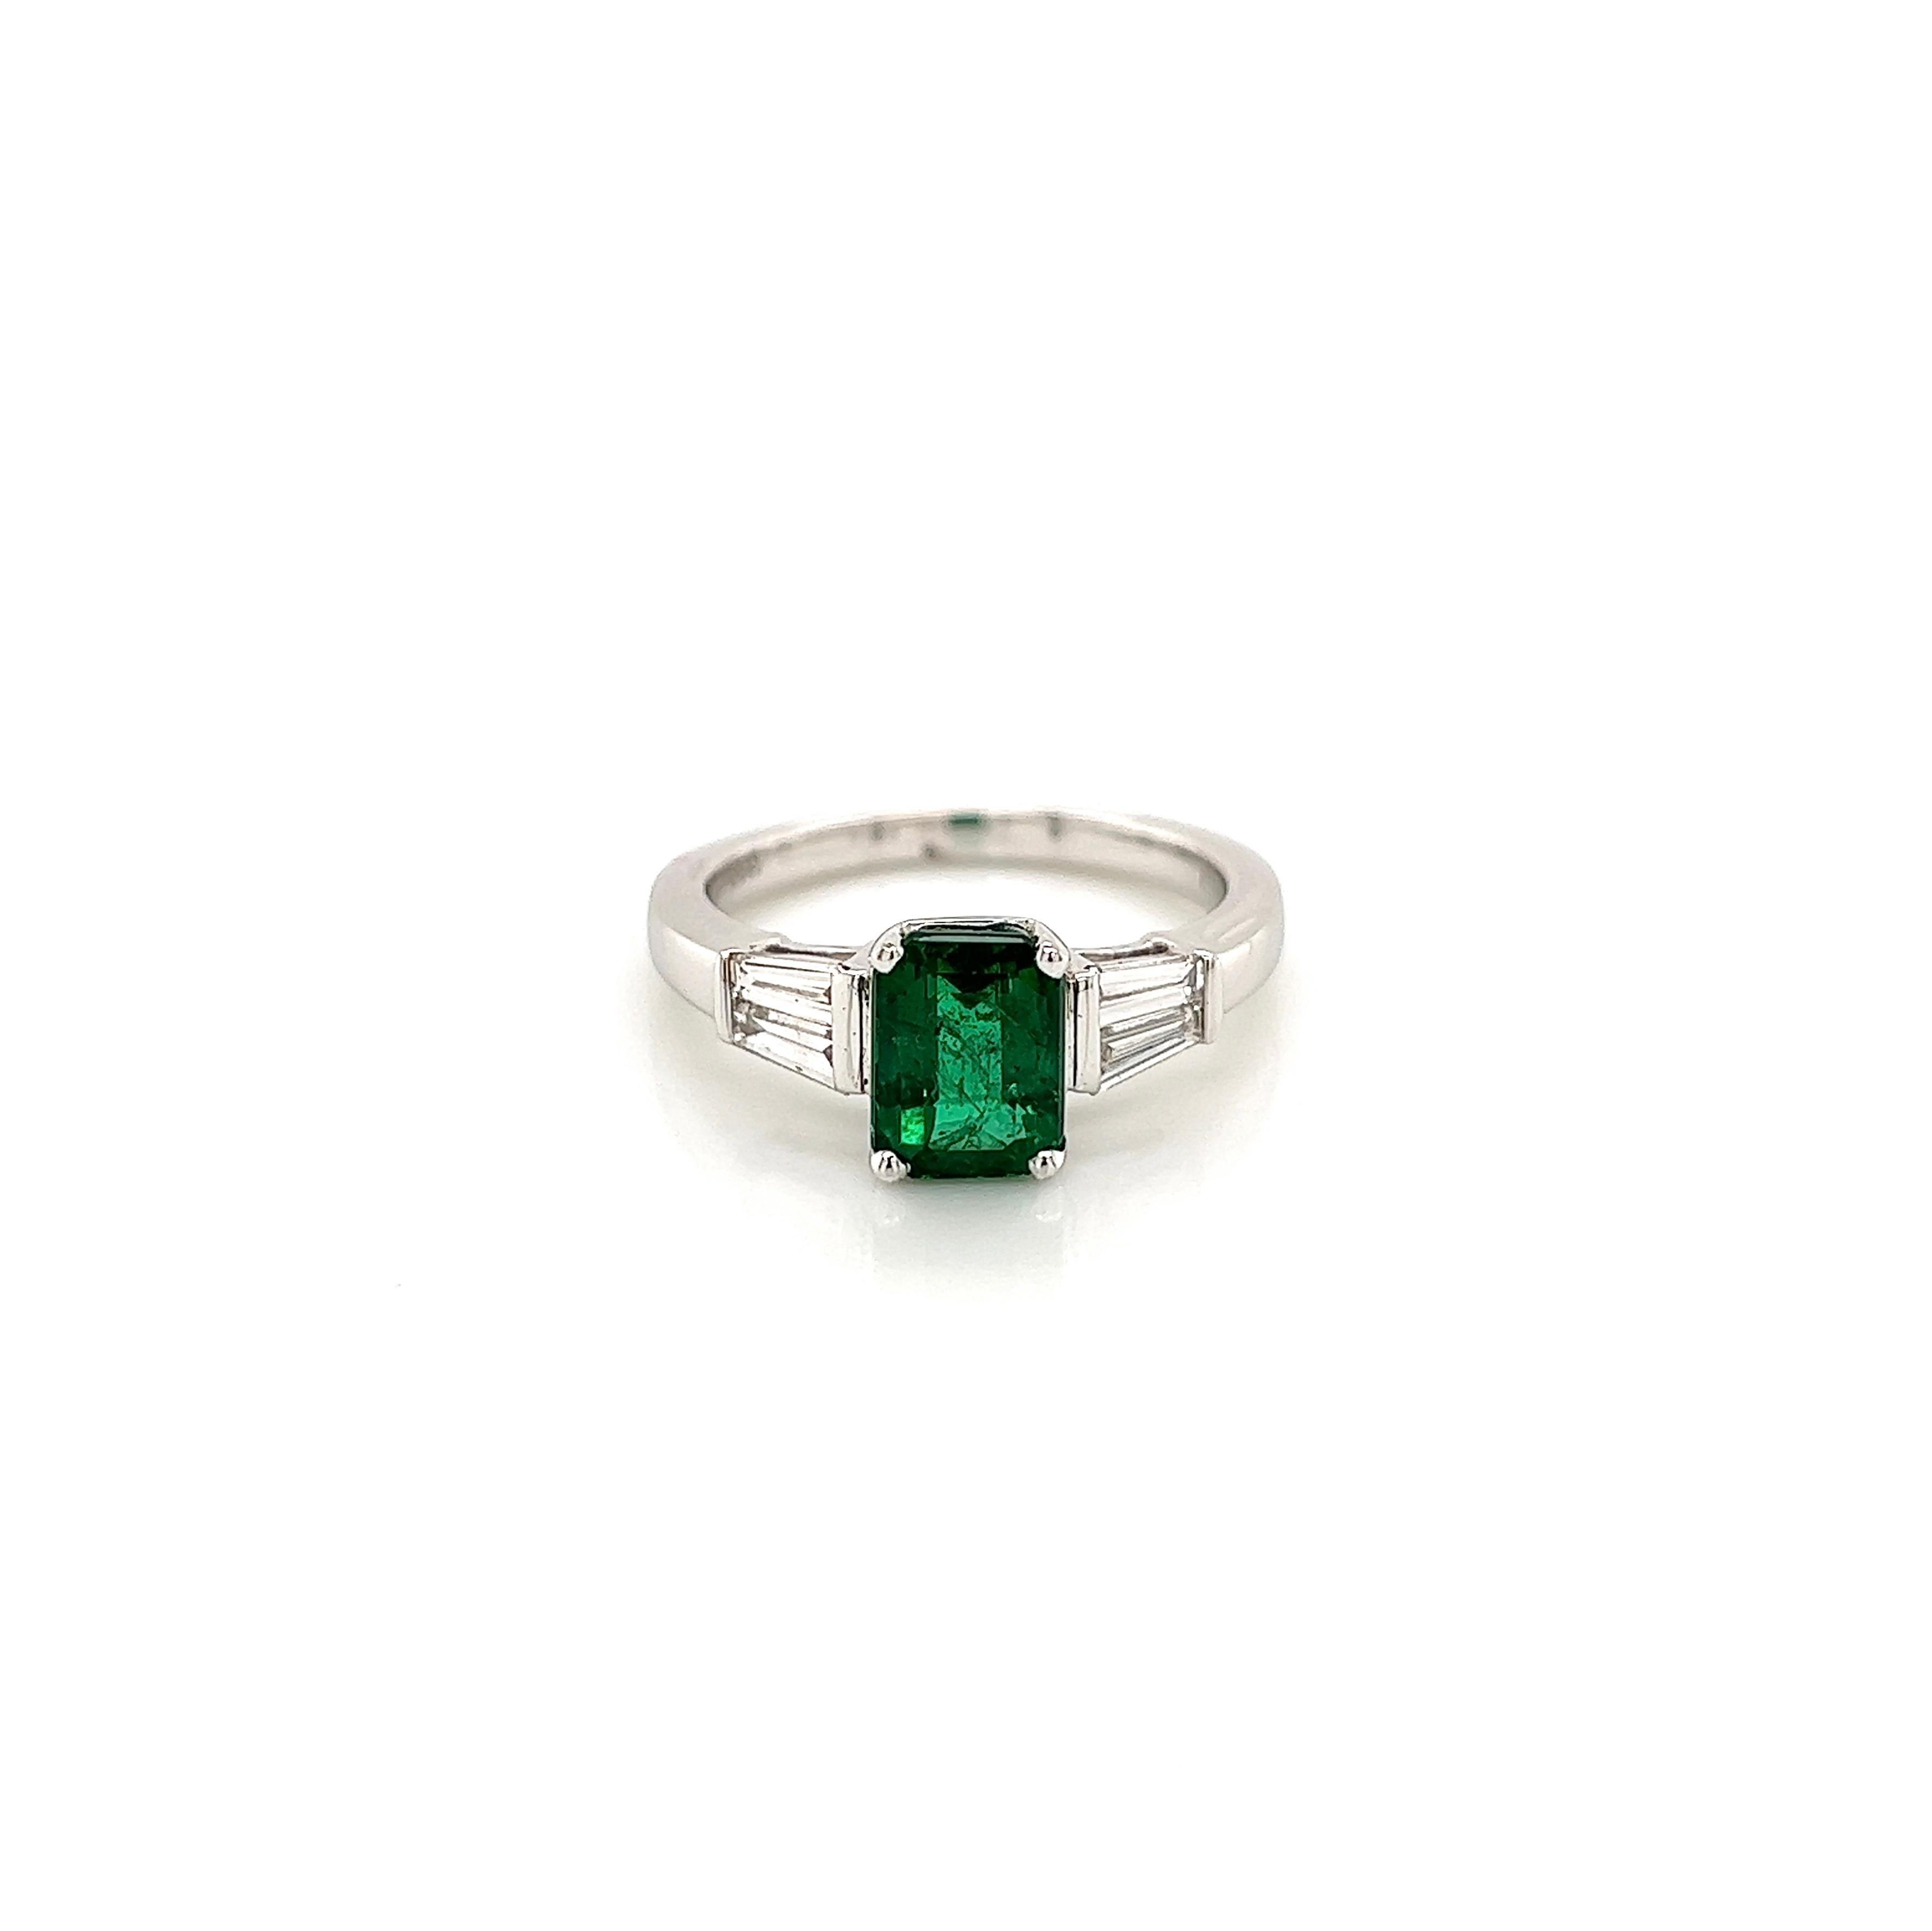 2.17 Carat Green Emerald Ladies Three Stone Ring (Bague à trois pierres pour dames) 

-Type de métal : Or blanc 18K
-Émeraude verte de 1,72 carat, 8,06 x 5,92 x 4,63 mm
Diamants baguettes latéraux de -0,45 carat 
-Taille 6.75

Fabriqué à New York